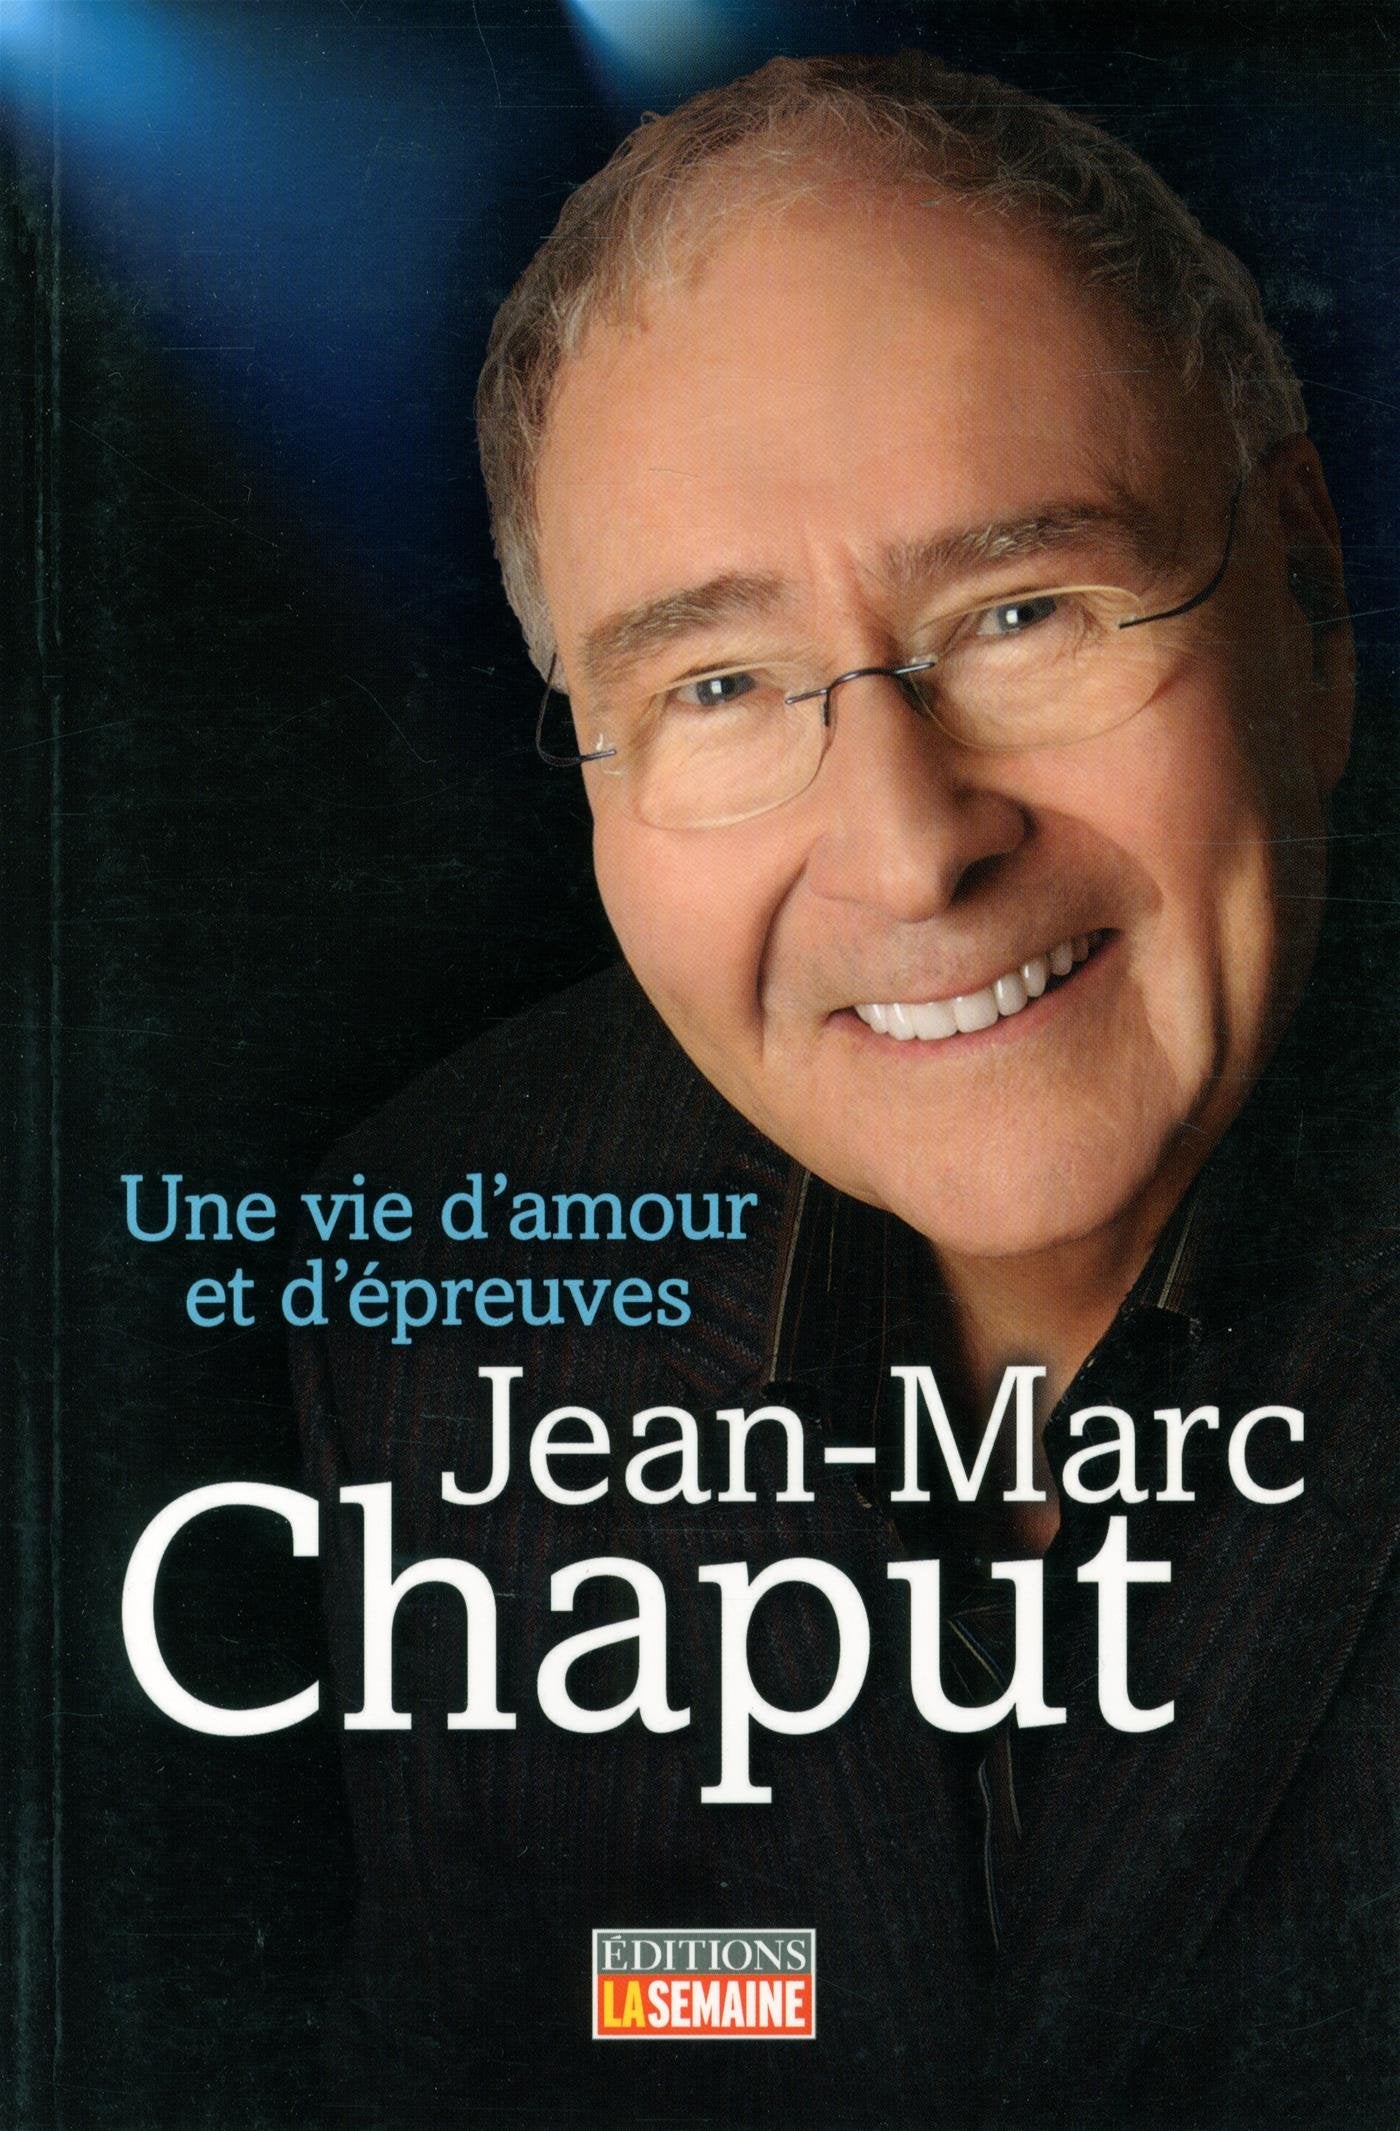 Jean-Marc Chaput: Une vie d'amour et d'épreuves - Jean-Marc Chaput